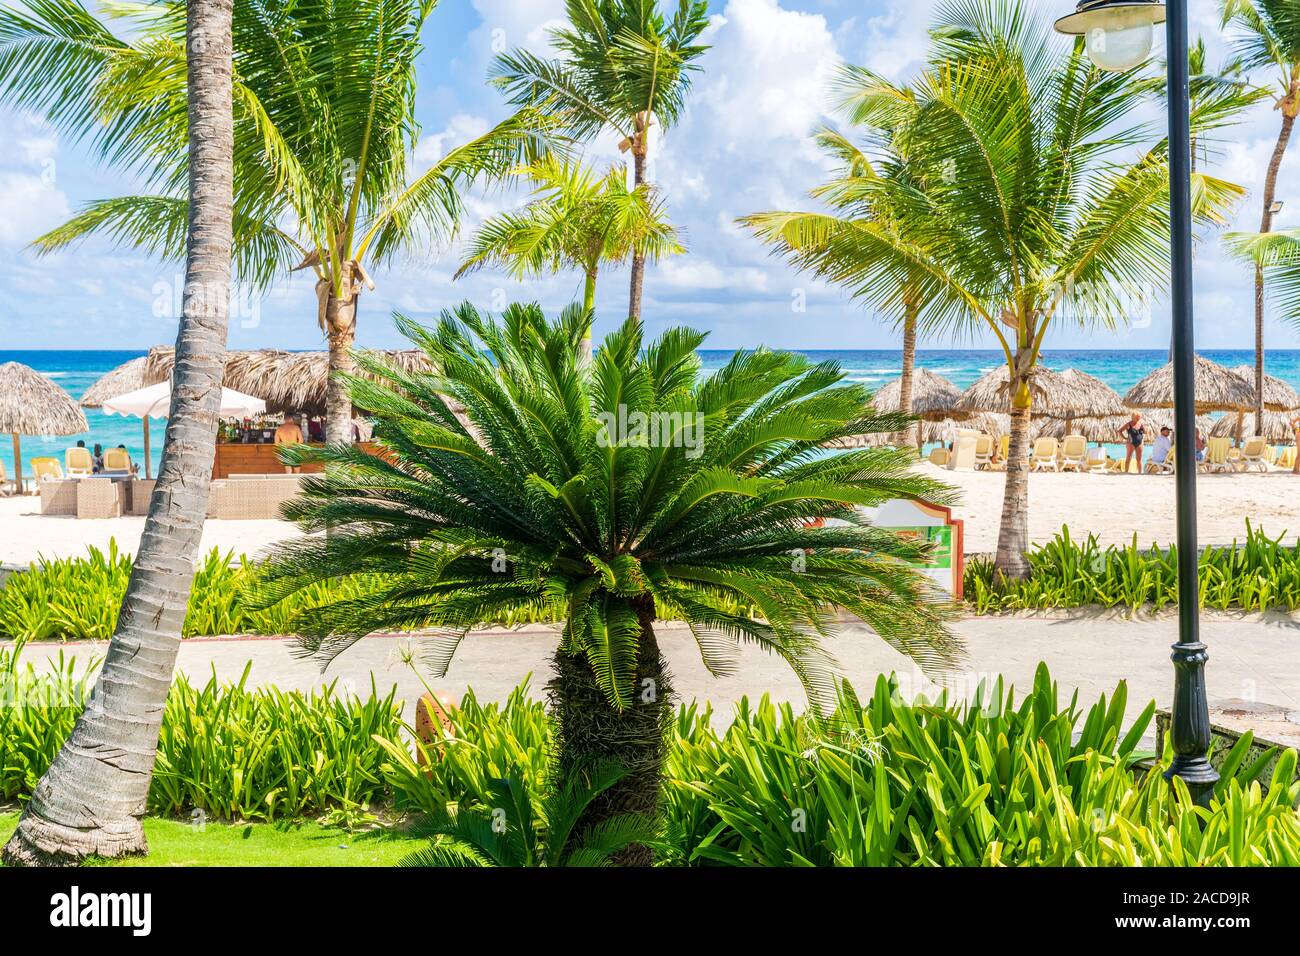 Punta Cana, Dominikanische Republik - 21. Oktober 2019: Schöner Strand in Punta Cana, Dominikanische Republik. Stockfoto